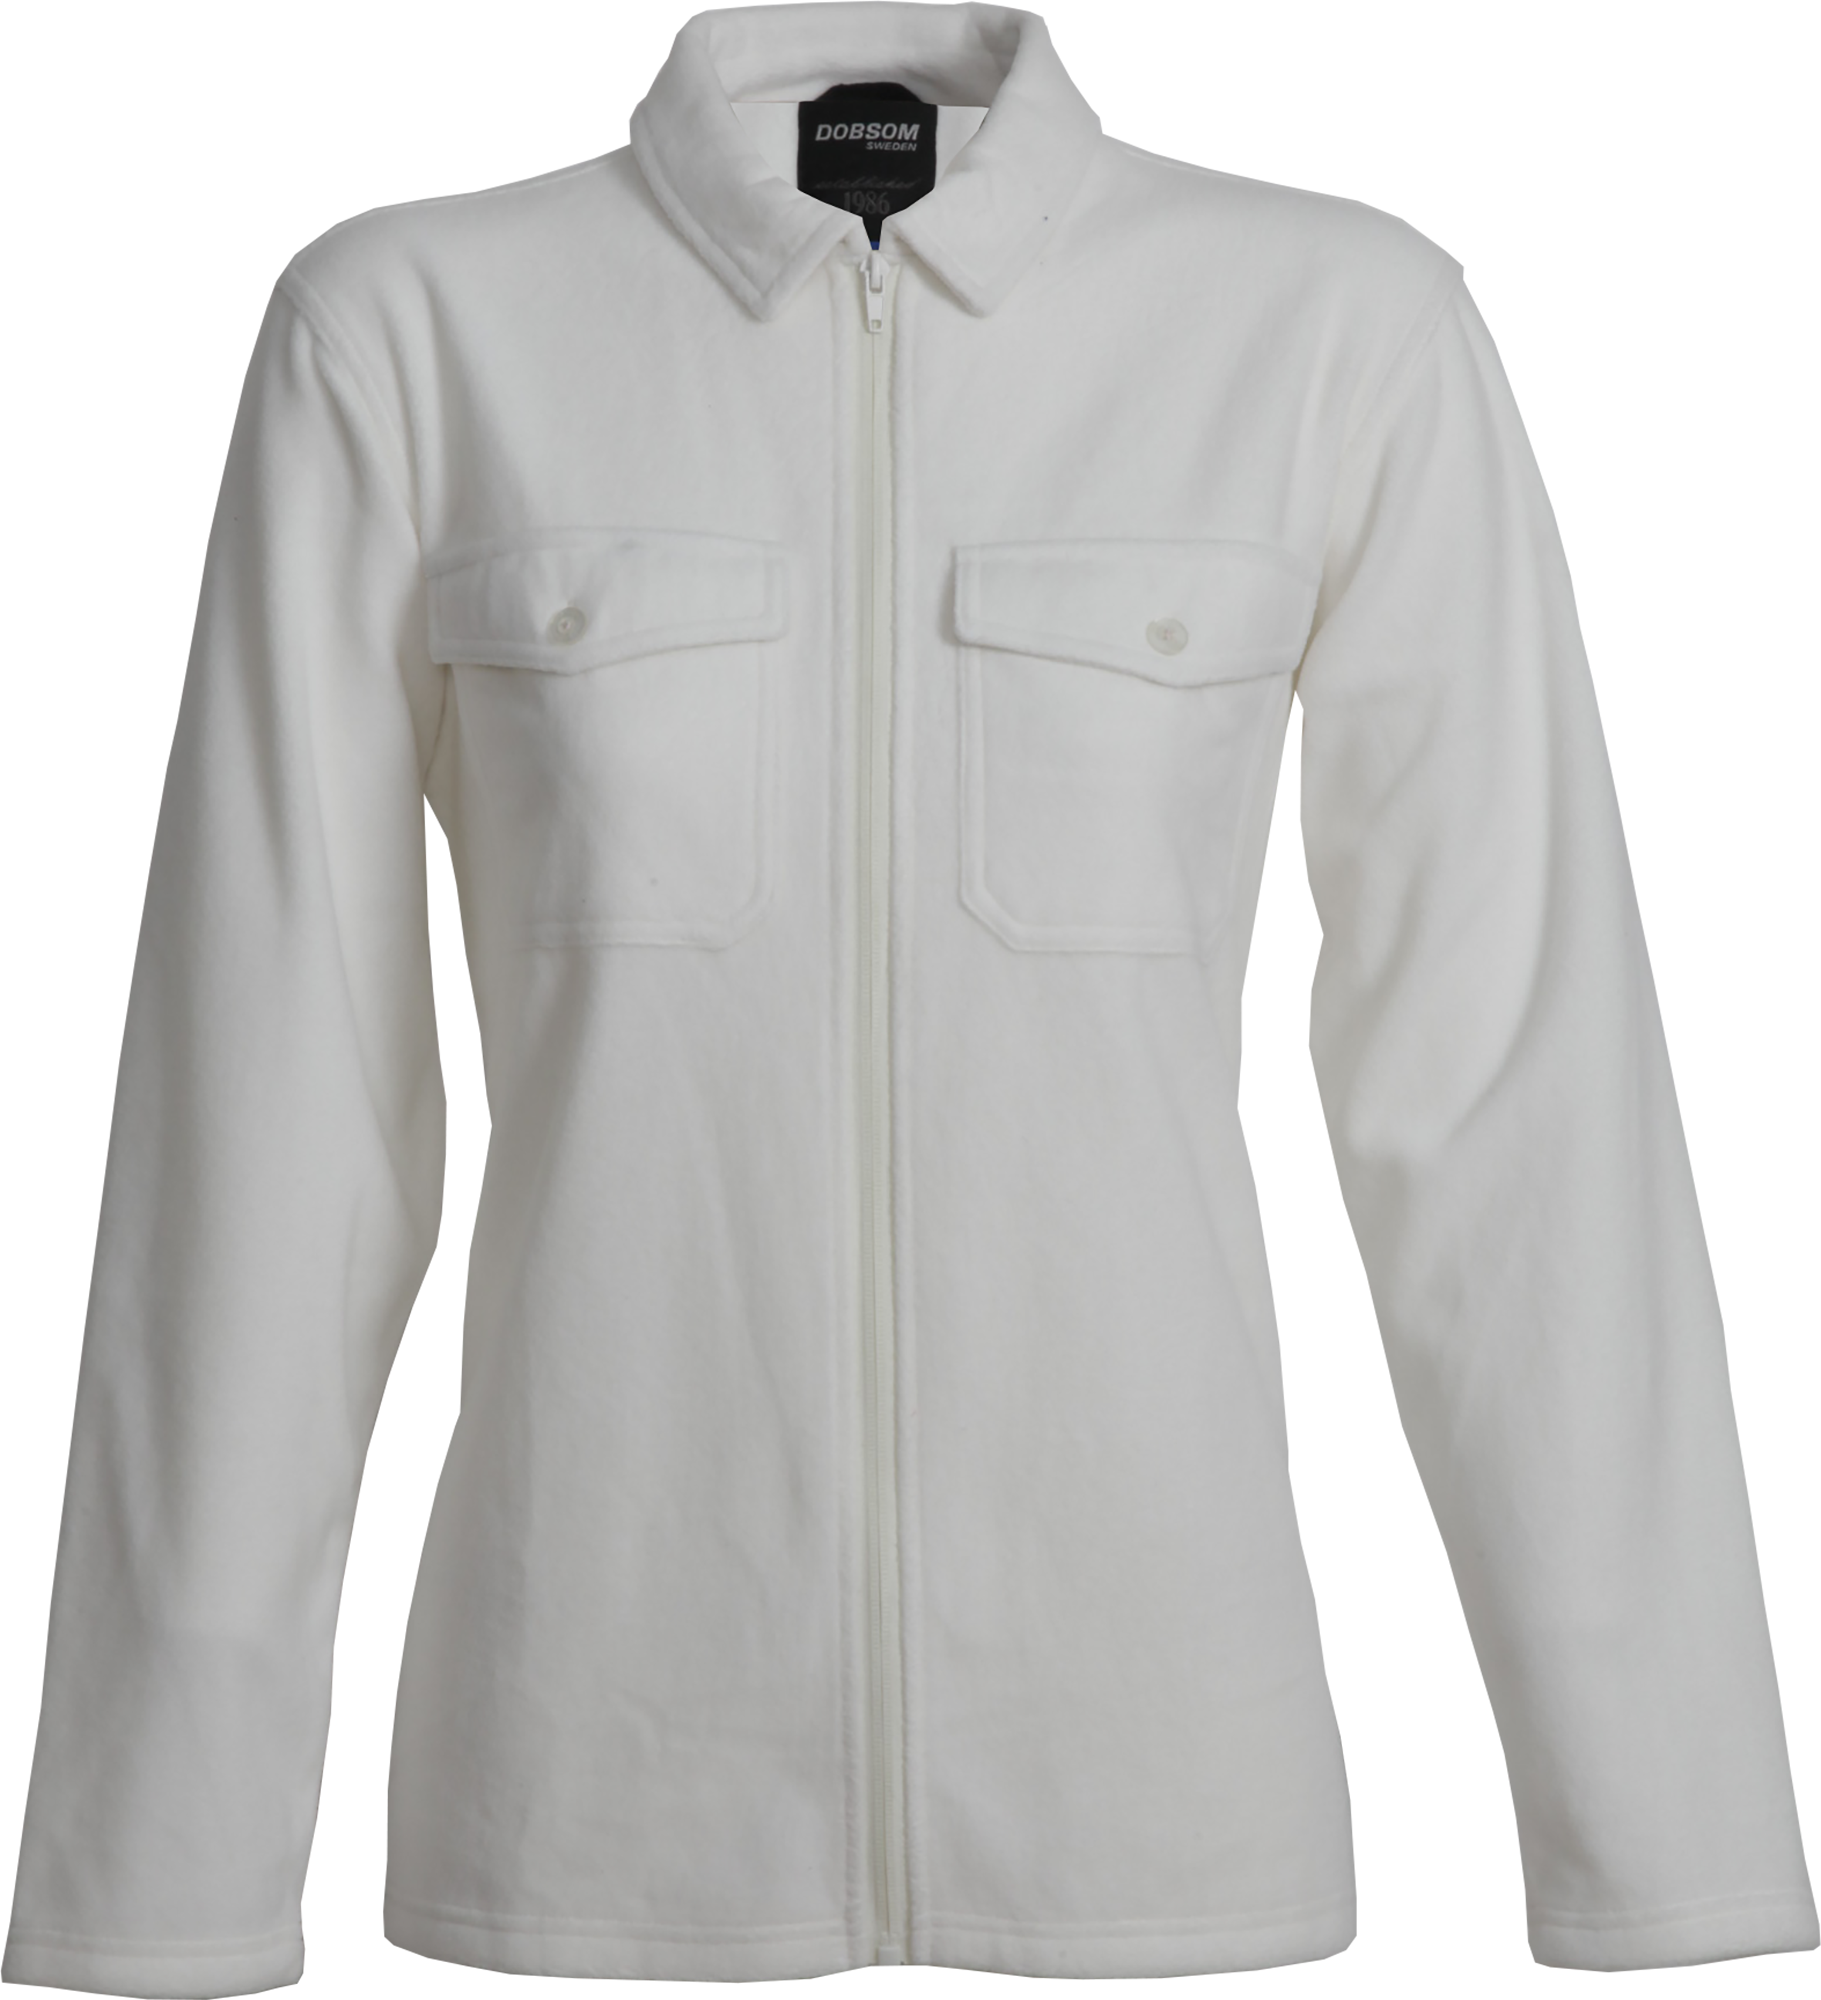 Dobsom Dobsom Women's Pescara Fleece Shirt Off White 38, Off White